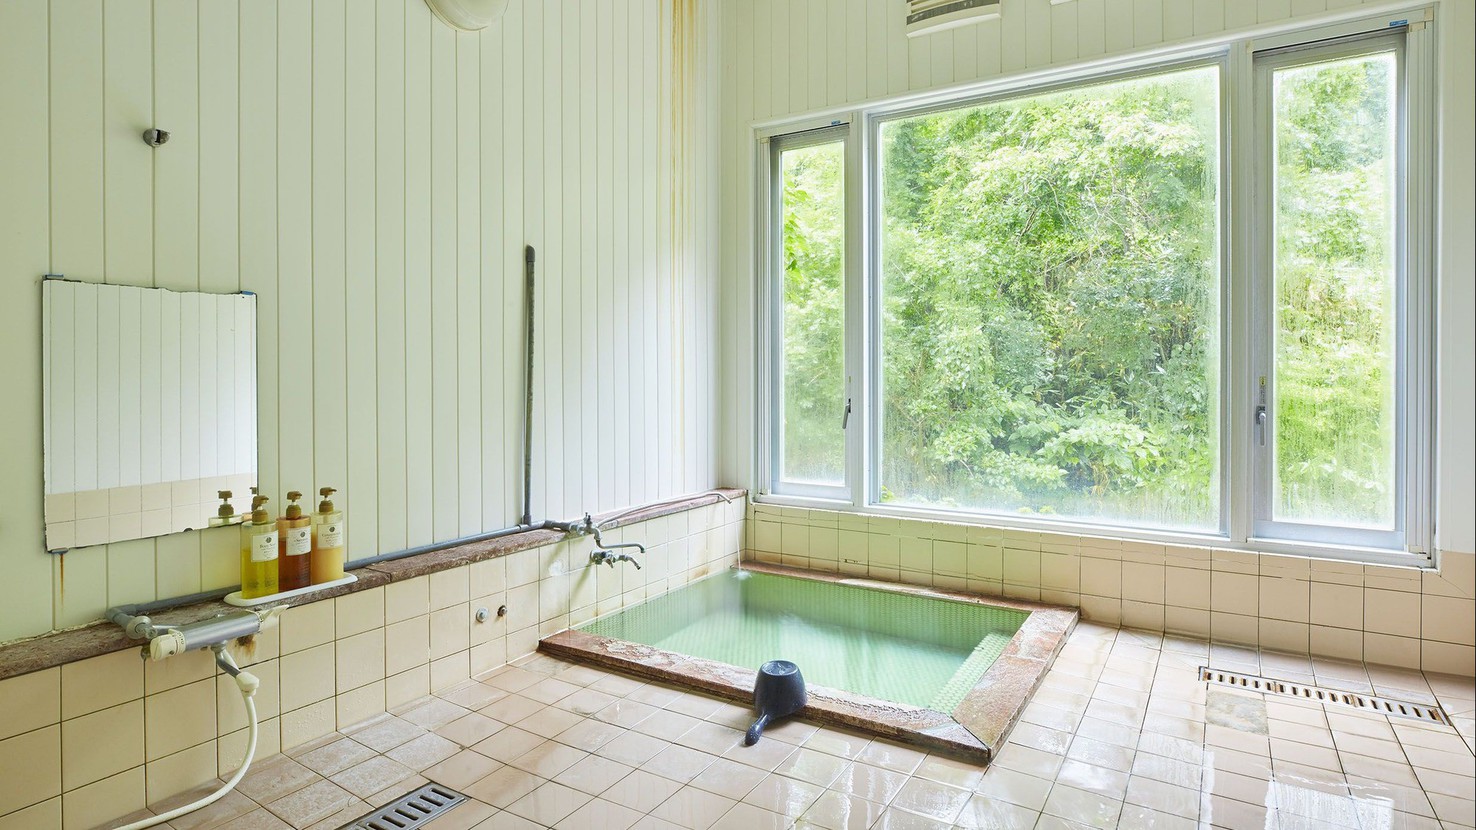 【貸切風呂】大きな窓が開放的。洗い場もある広々とした浴場です。